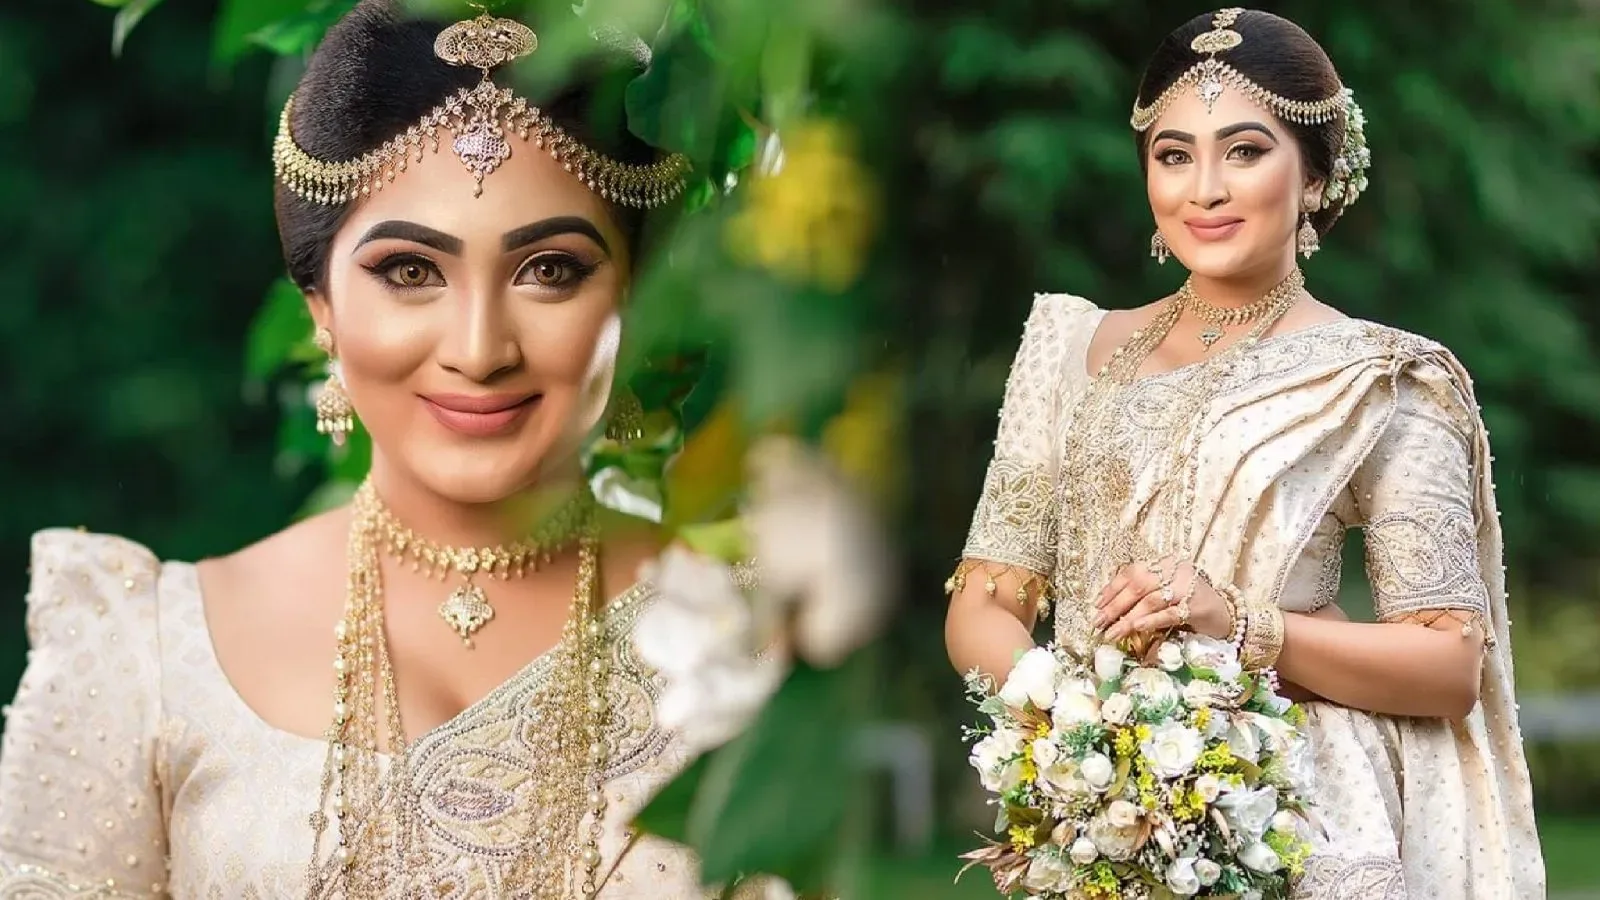 Himashi Athapaththu wore a beautiful bridal saree and looked stunning